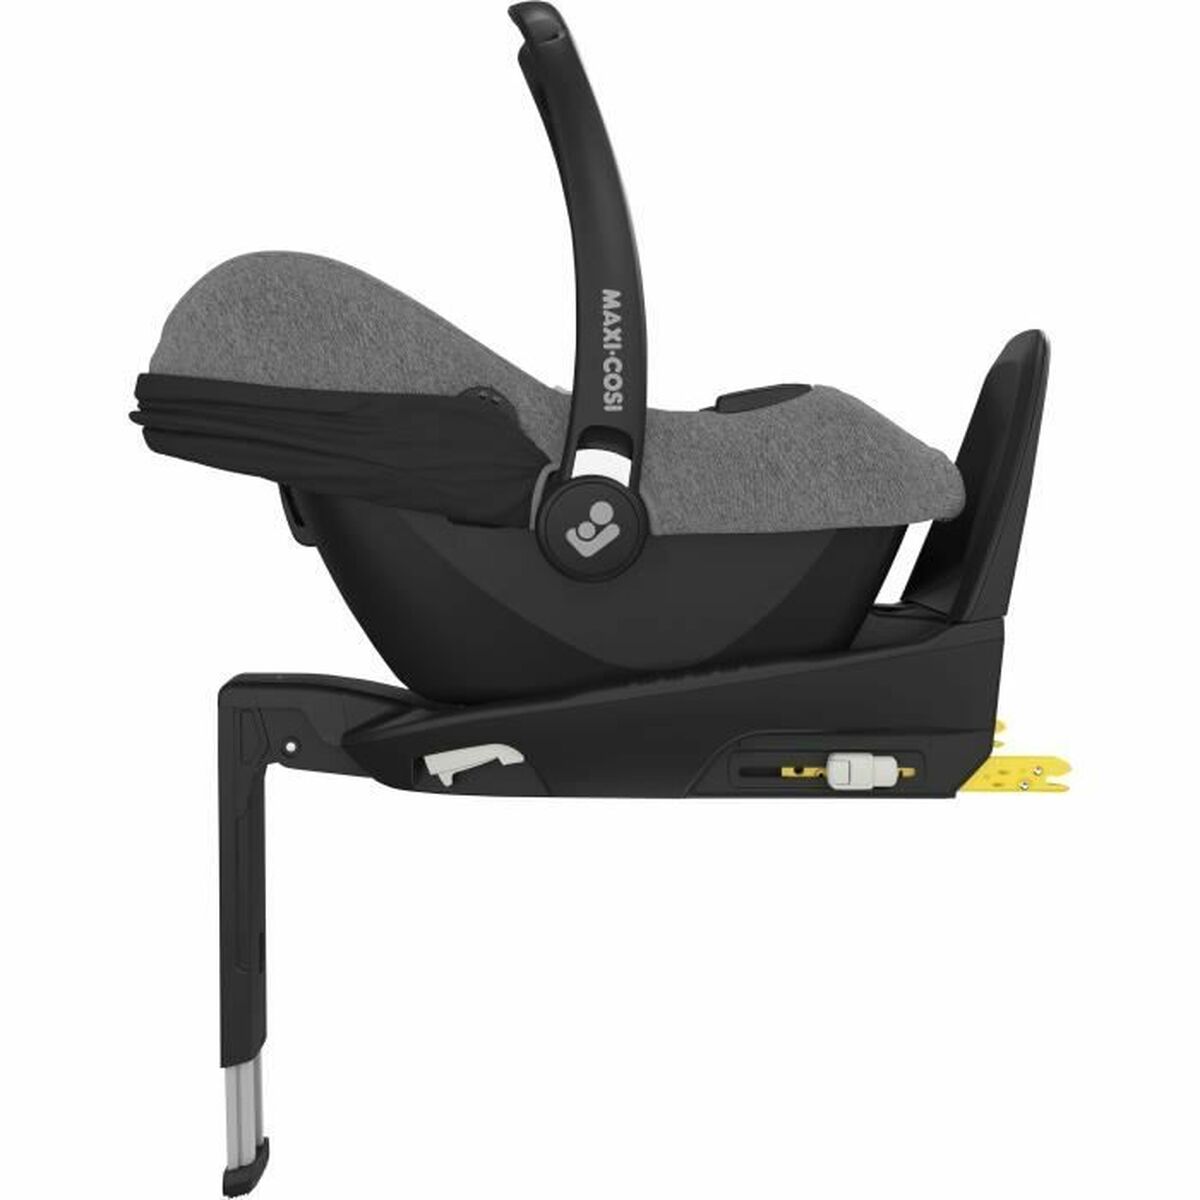 Auto Krēsls Maxicosi Cabriofix i-Size Pelēks 0+ (de 0 a 13 kilos) Bērnu autosēdeklītis